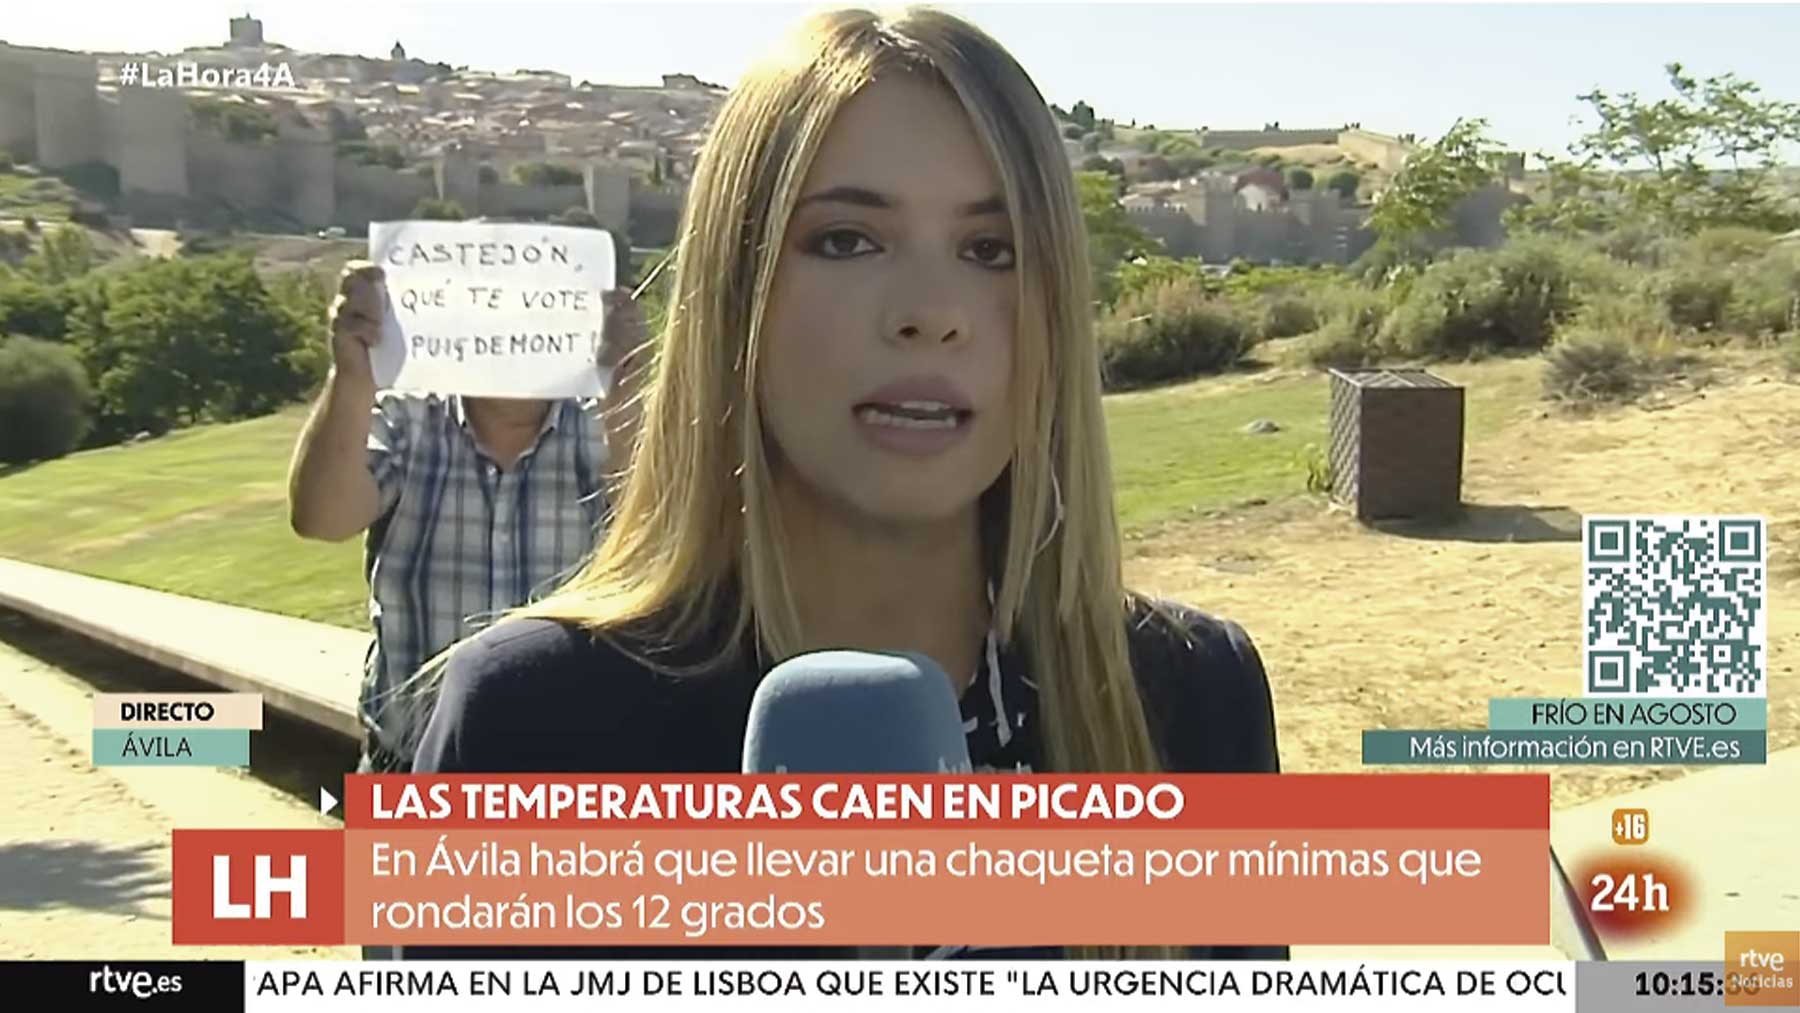 Troleo en TVE: «¡Castejón, que te vote Puigdemont!».